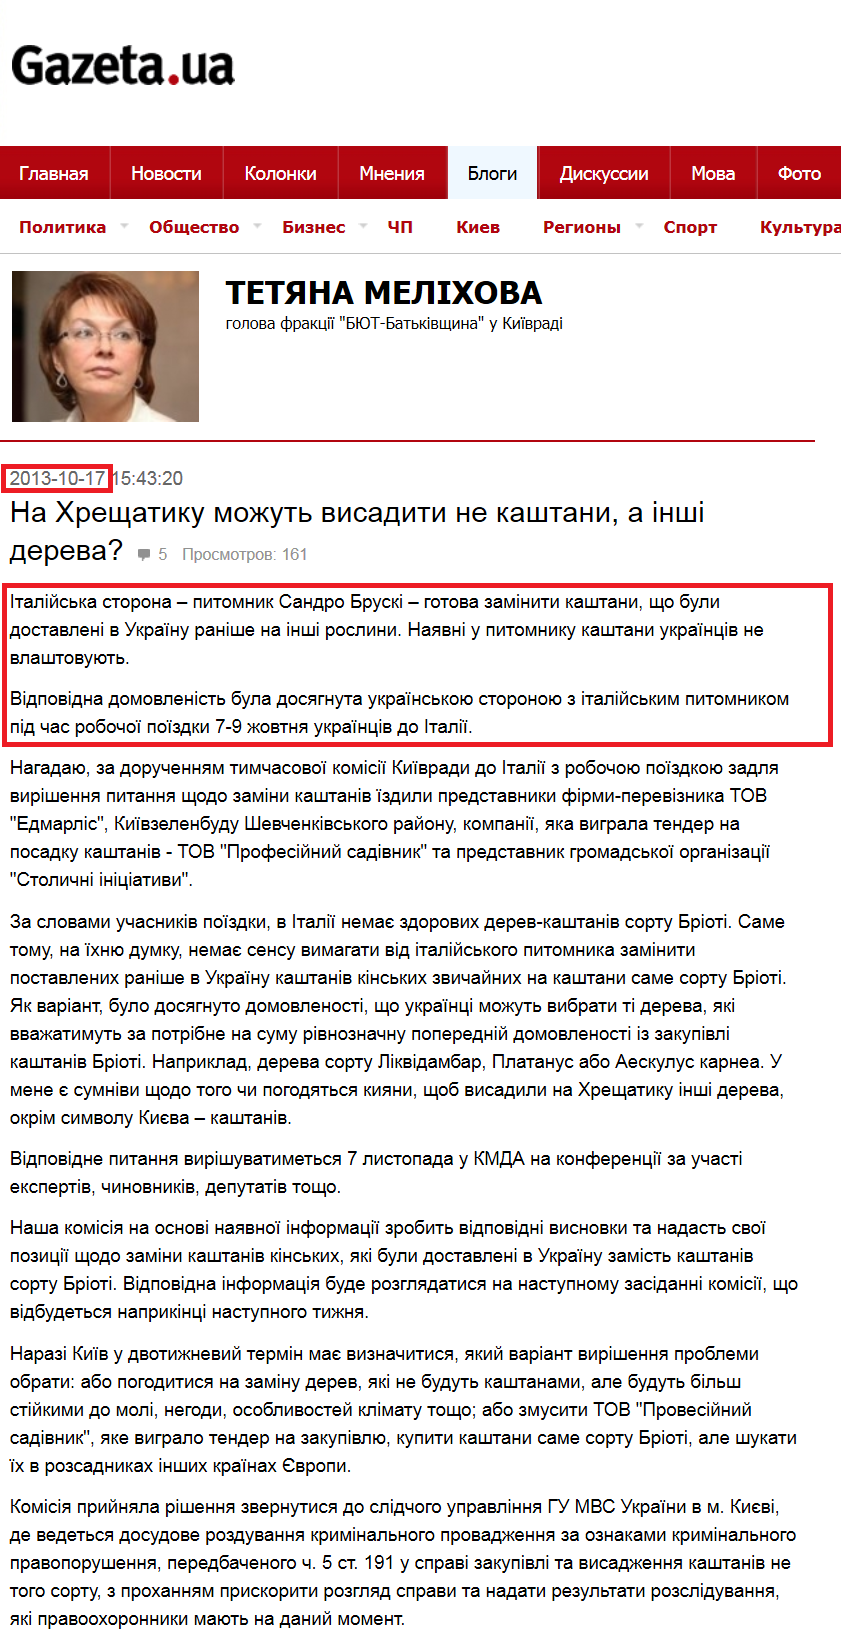 http://gazeta.ua/ru/blog/39516/na-hreschatiku-mozhut-visaditi-ne-kashtani-a-inshi-dereva